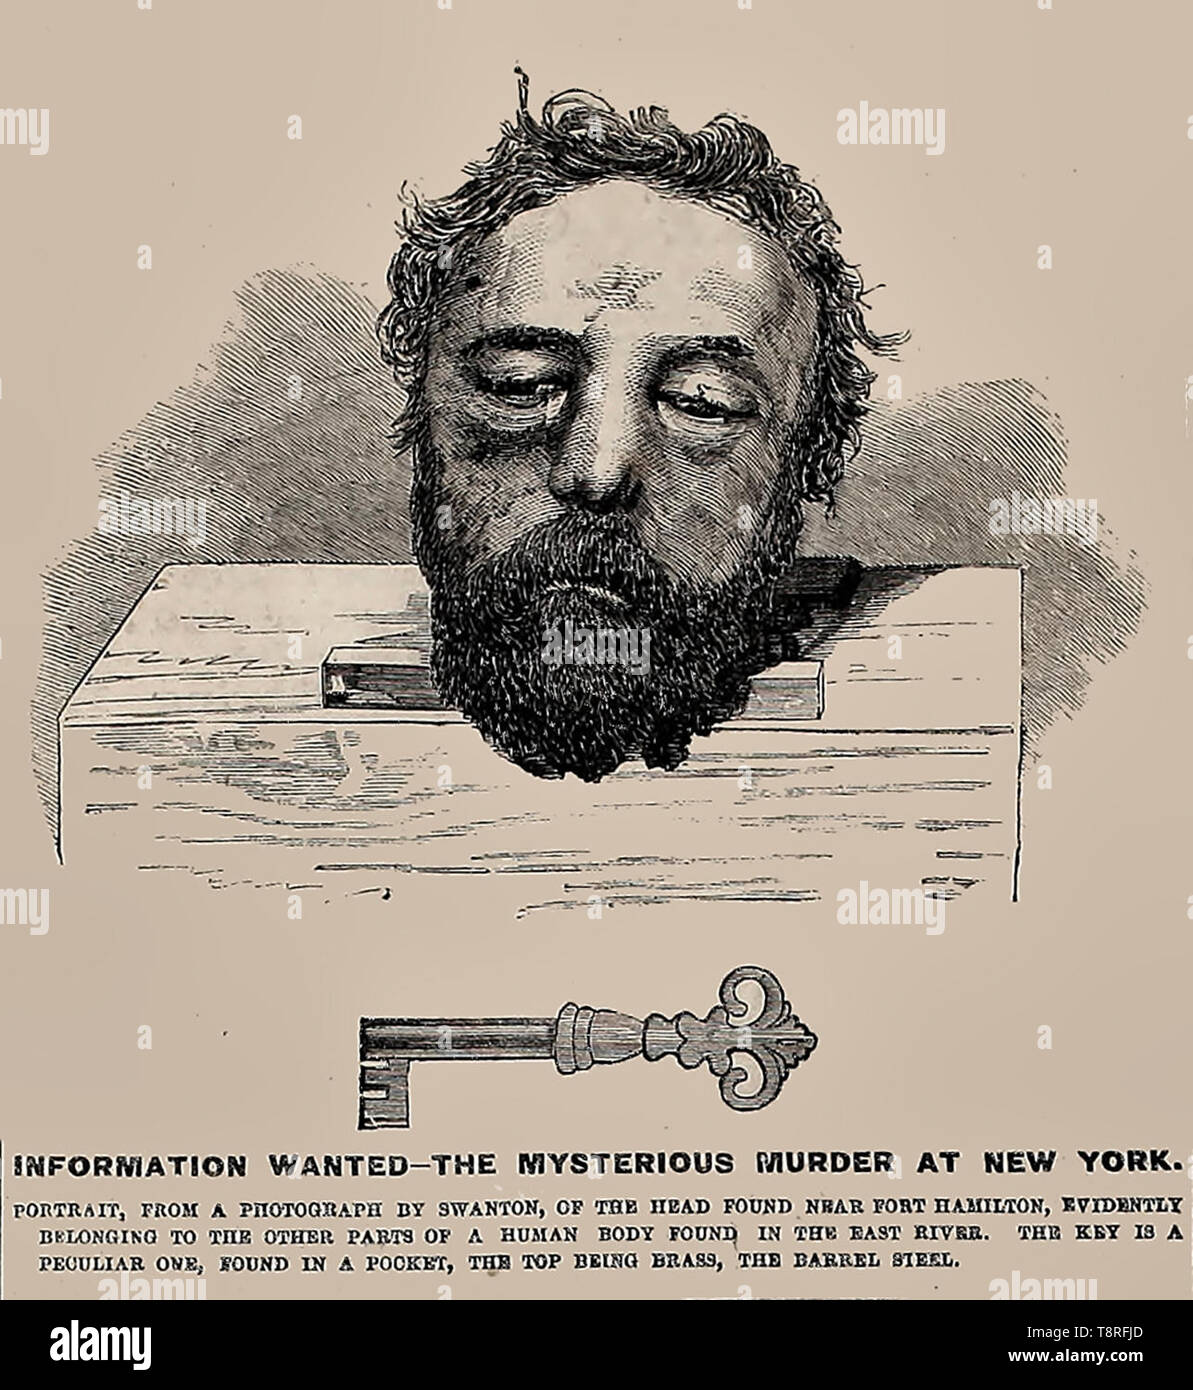 Informationen wollte Ad in New York 1864 - Der mysteriöse Mord an der New York - Kopf gefunden in der Nähe von Fort Hamilton, offensichtlich der anderen Teile des menschlichen Körpers in den East River gefunden, mit einer ungewöhnlichen Messing Schlüssel Stockfoto